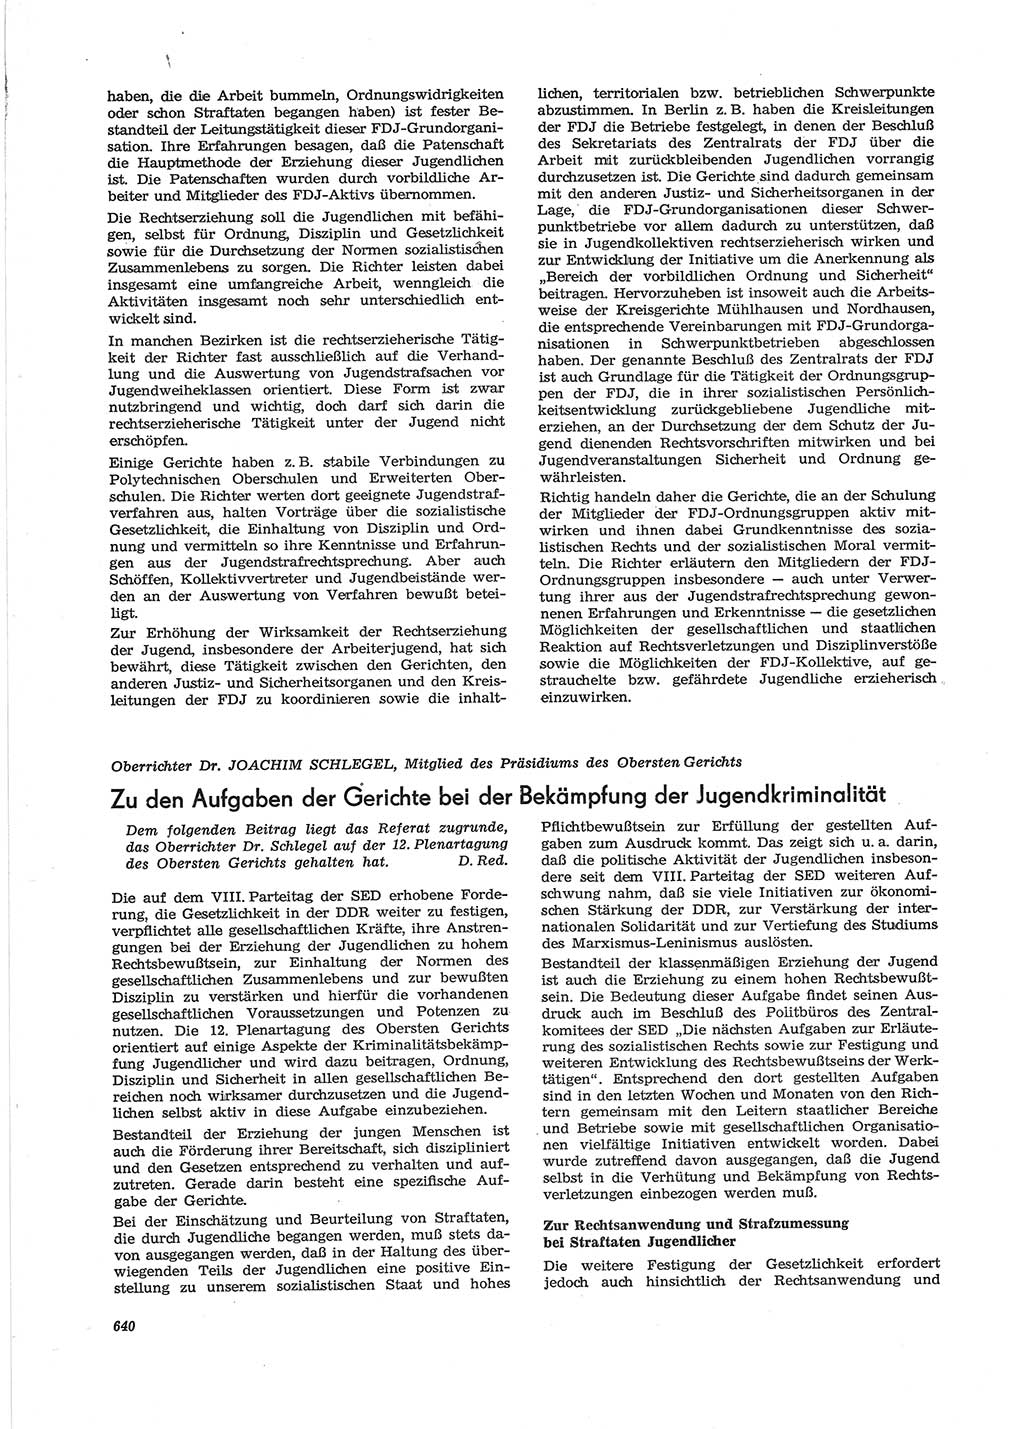 Neue Justiz (NJ), Zeitschrift für Recht und Rechtswissenschaft [Deutsche Demokratische Republik (DDR)], 28. Jahrgang 1974, Seite 640 (NJ DDR 1974, S. 640)